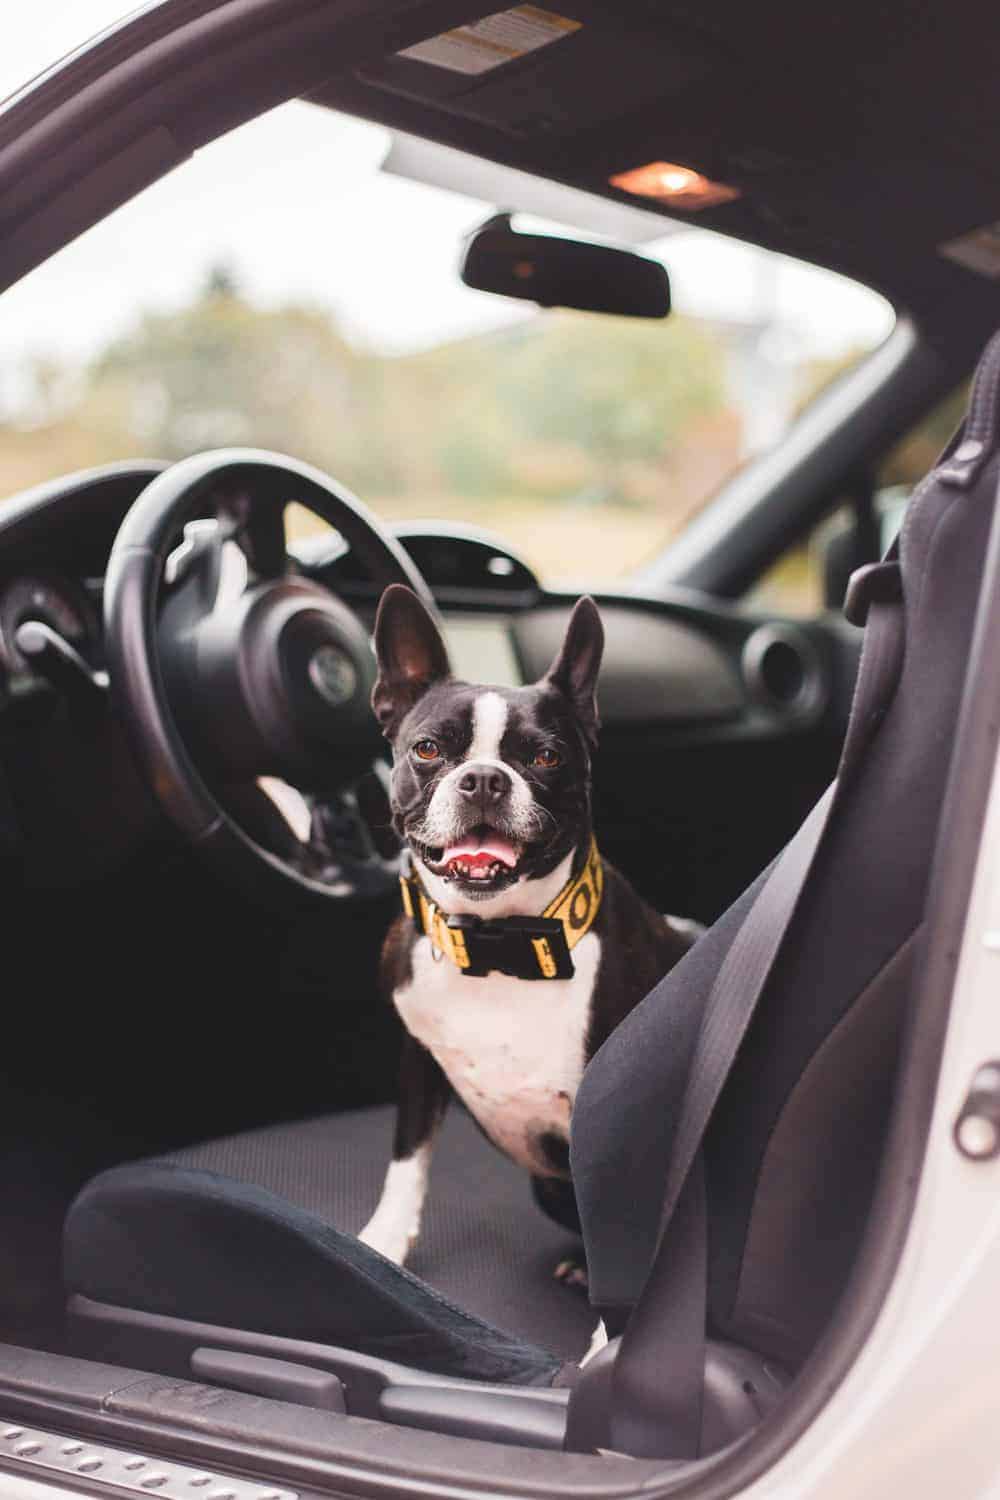 Rücksitzschoner Hund – Die 15 besten Produkte im Vergleich